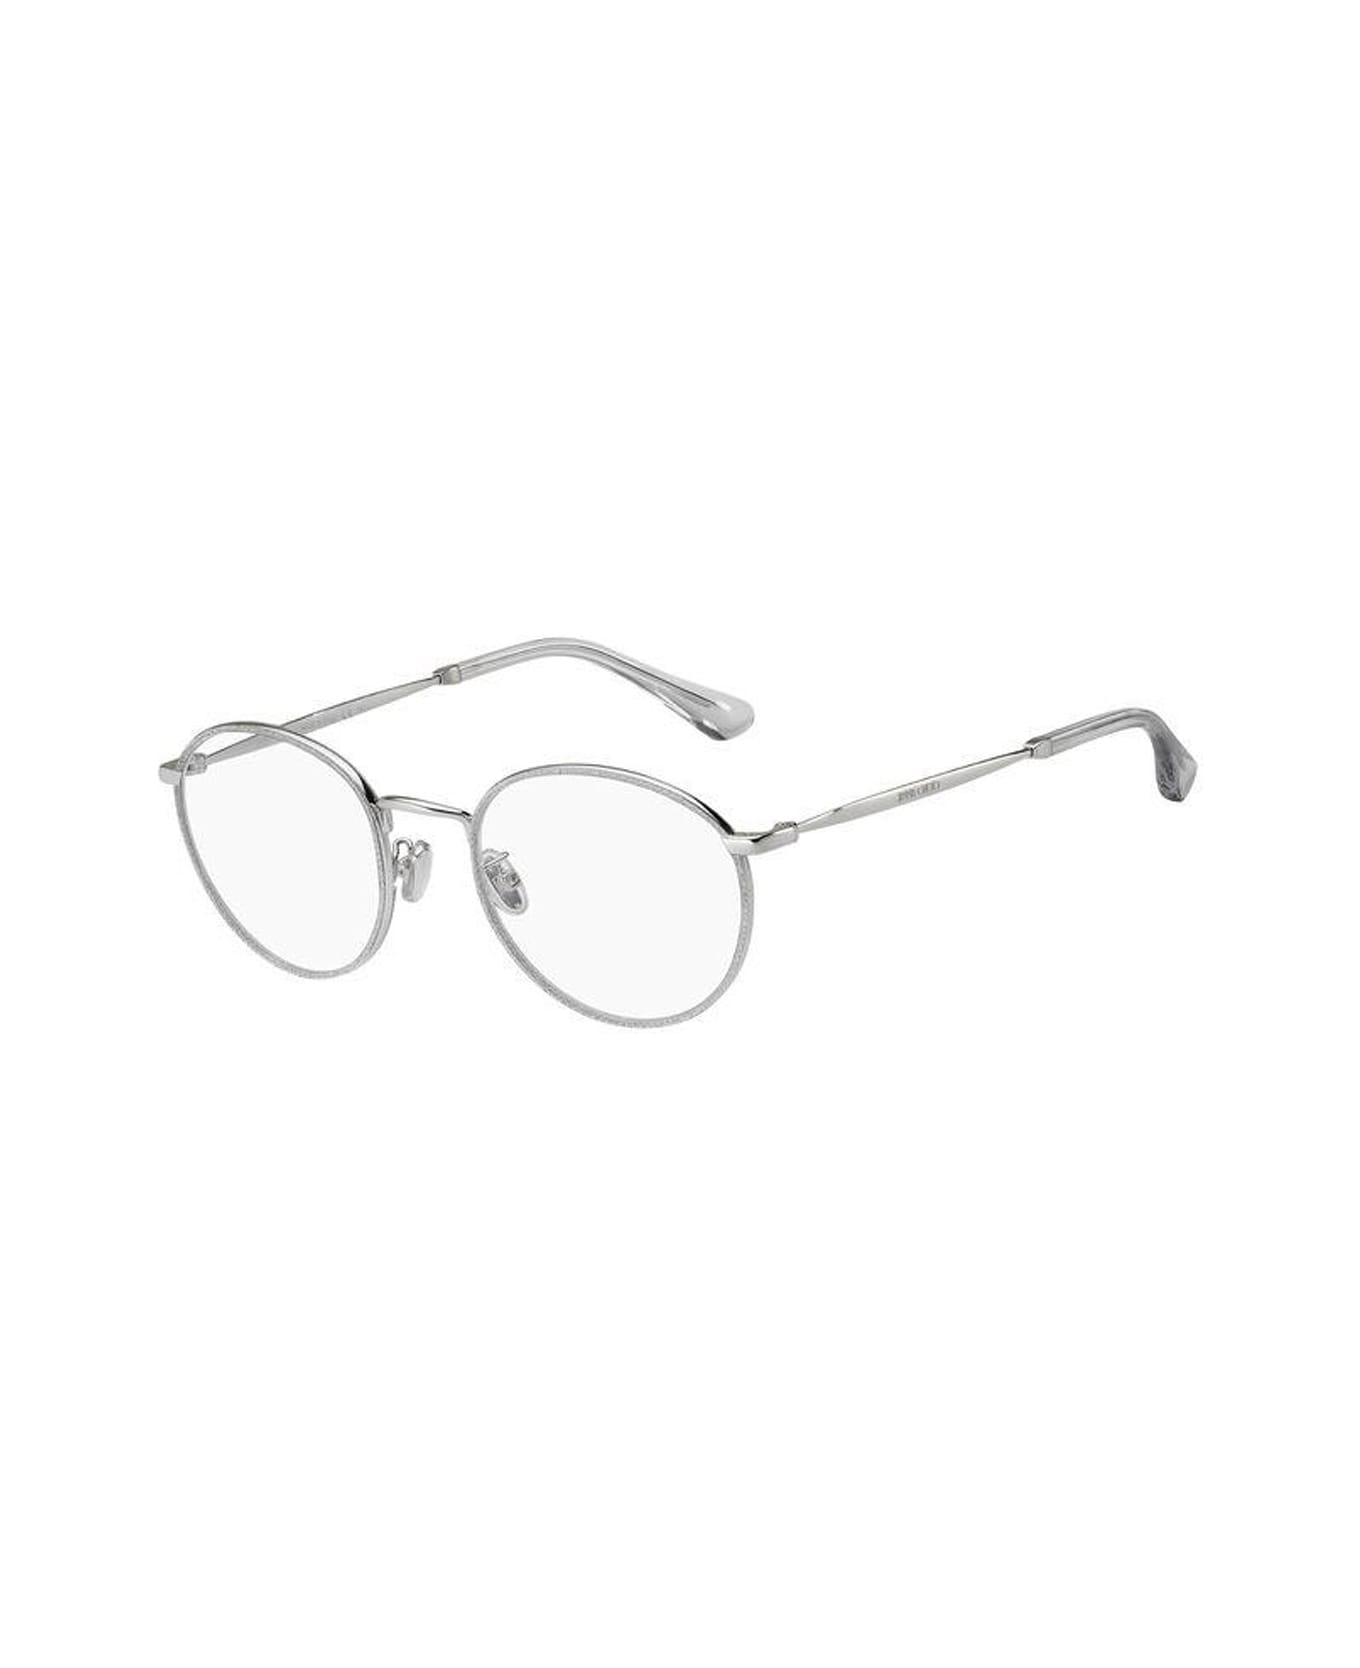 Jimmy Choo Eyewear Jc251/g Glasses - Argento アイウェア